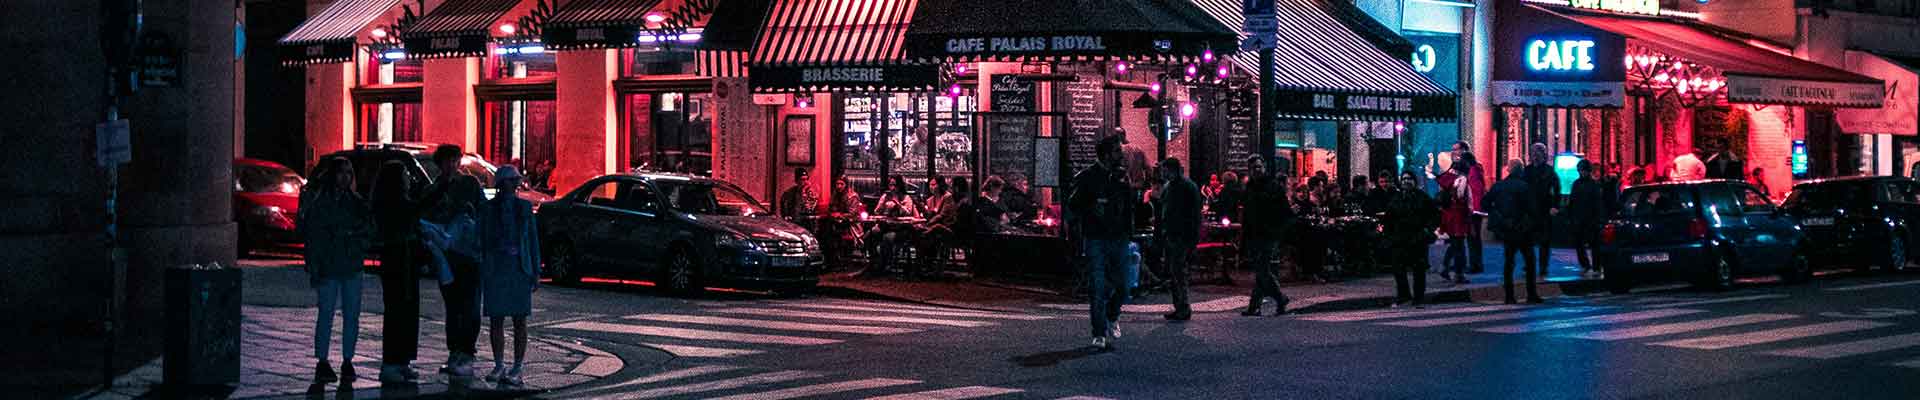 14 question design web local - Paris la nuit, un bar près du carrefour, des personnes traversent la rue